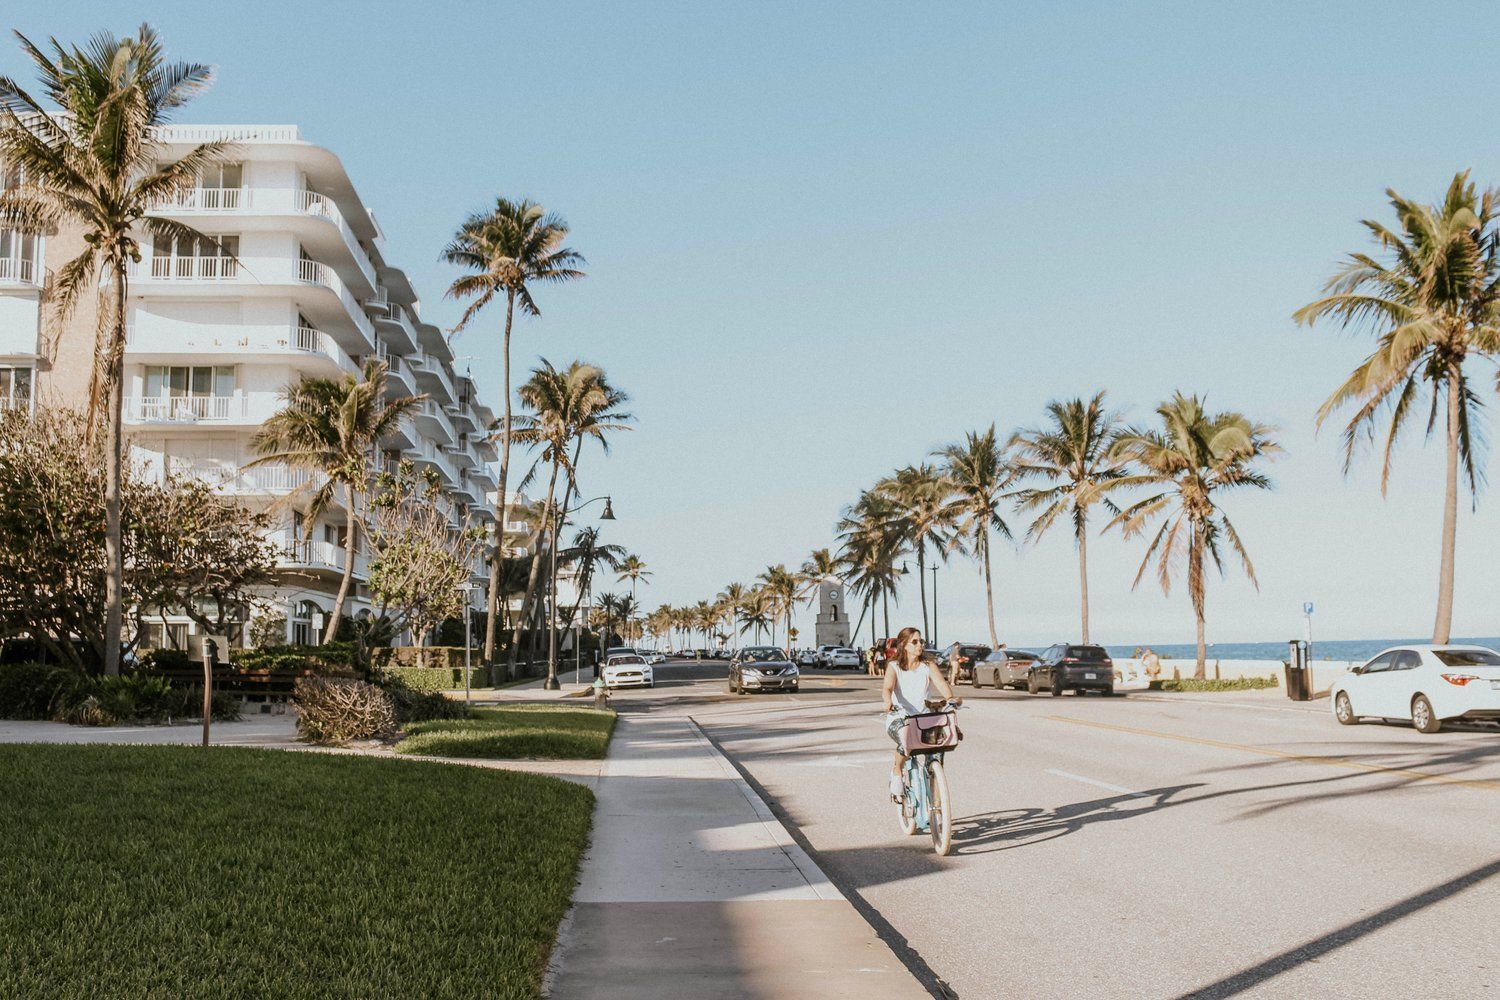 Una mujer anda en bicicleta por una acera junto a palmeras.